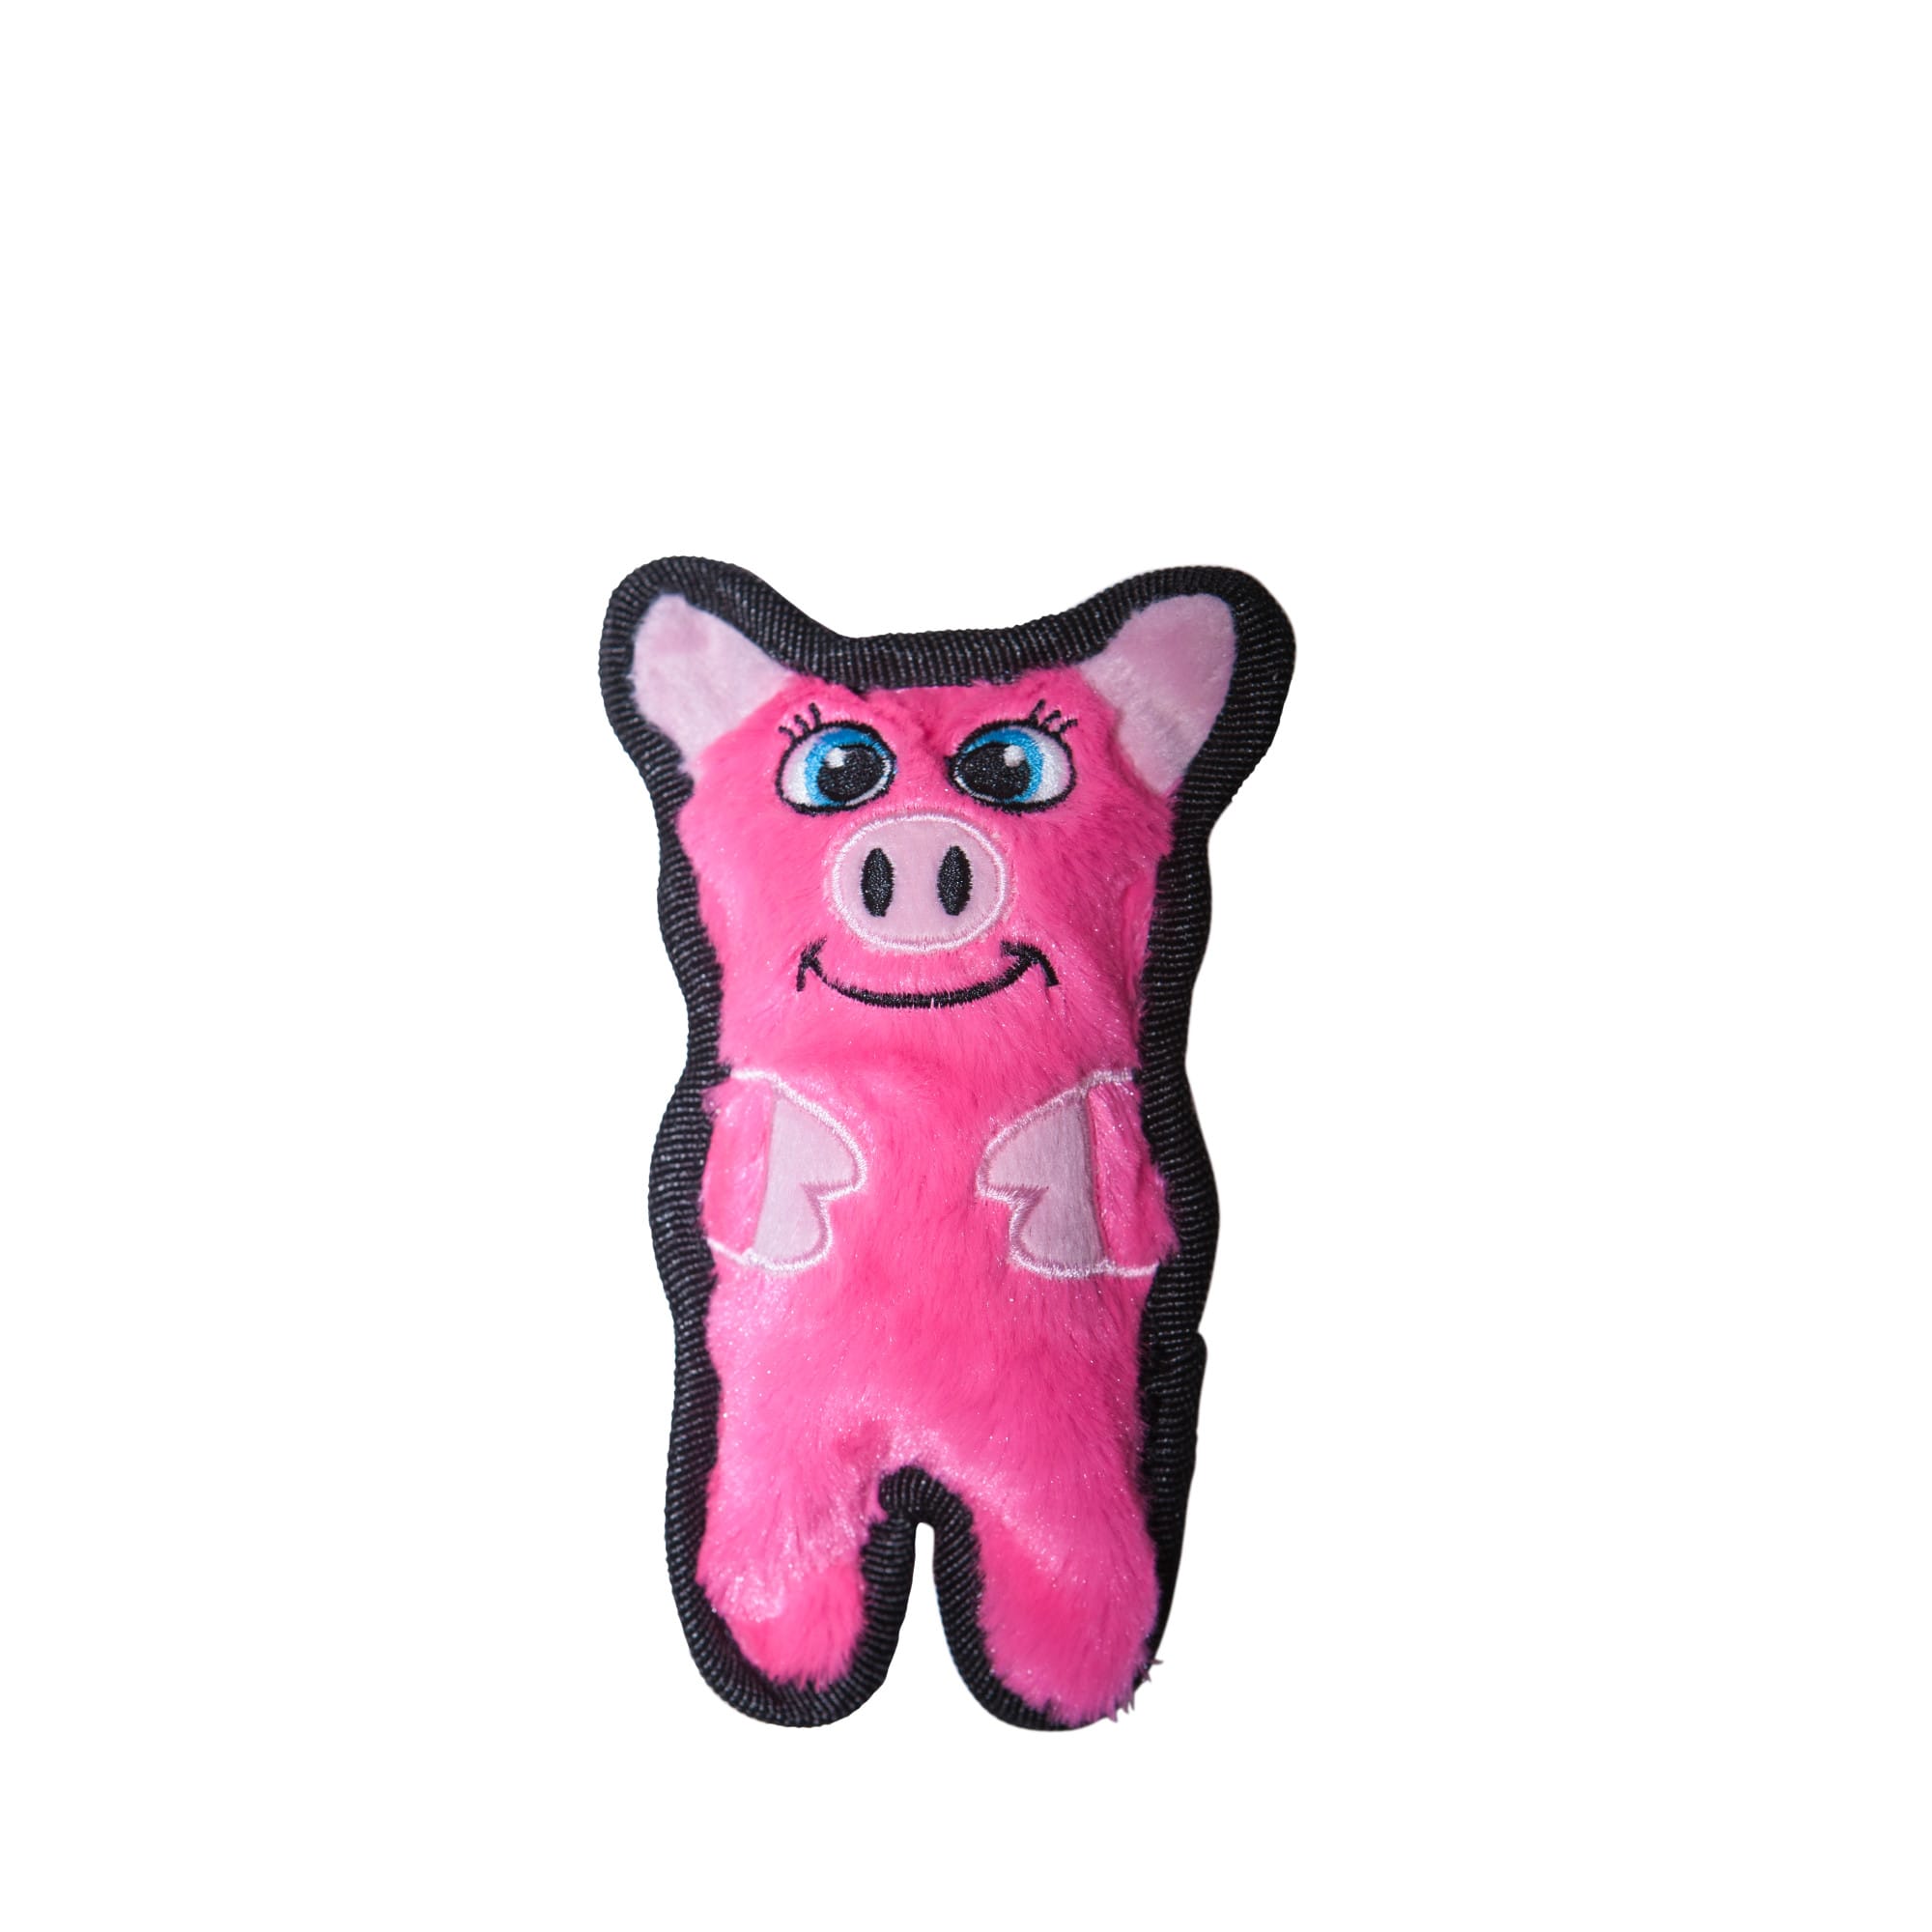 pink pig dog toy